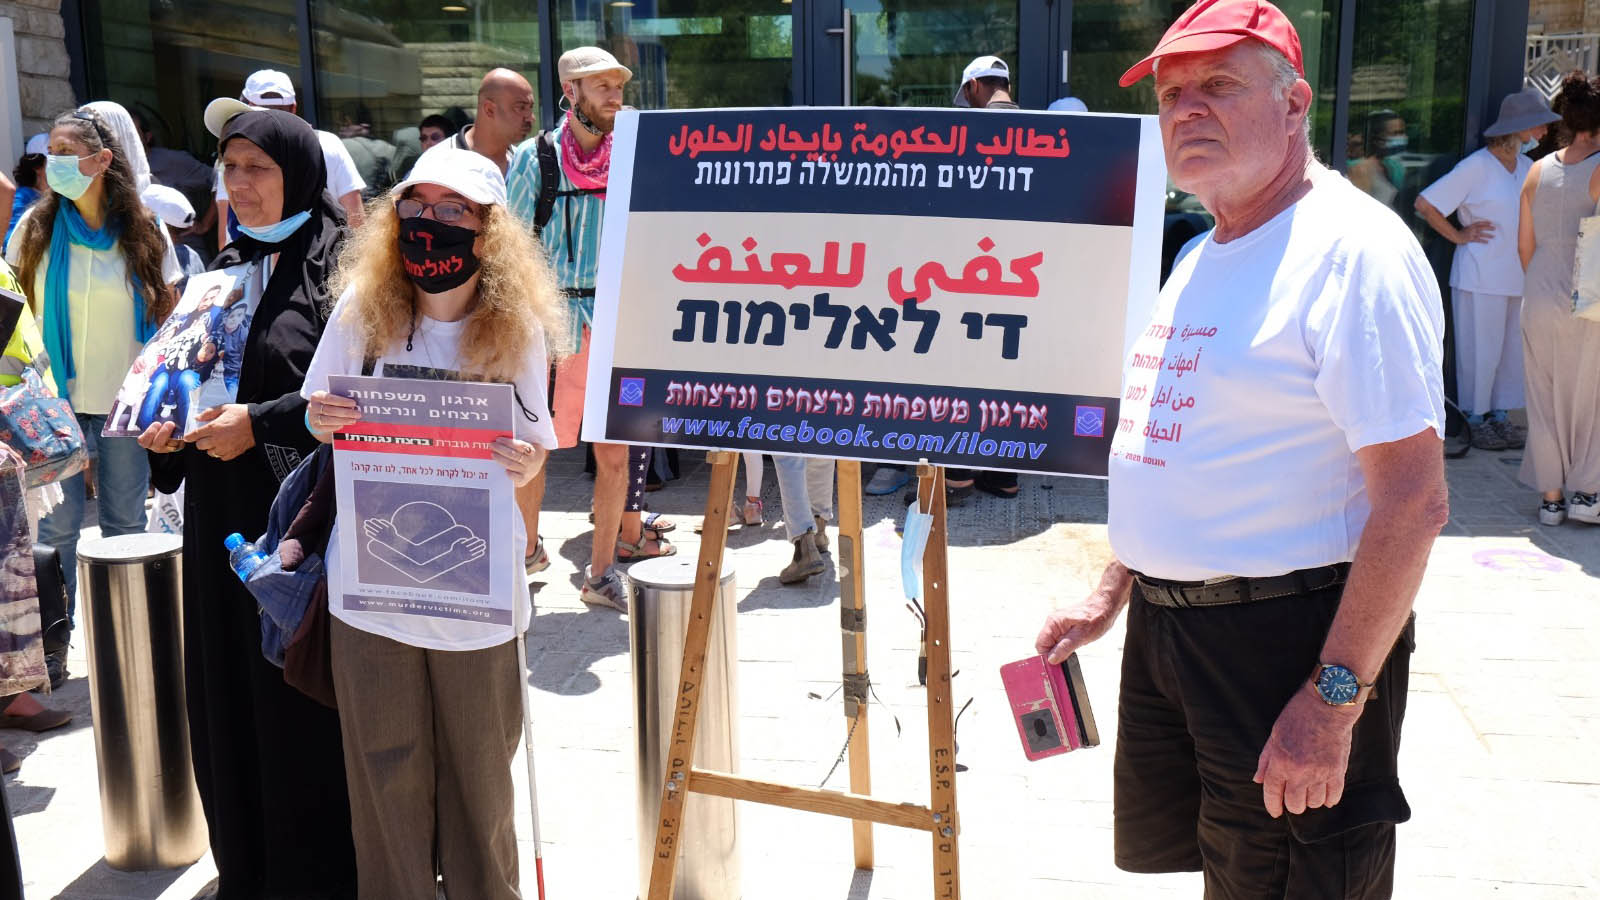 عوزيعام سابير (من اليمين) في مسيرة نساء ضد العنف في مدينة القدس: &quot;القتل هو قتل هو قتل&quot;. (تصوير: دافيد طبرسكي)